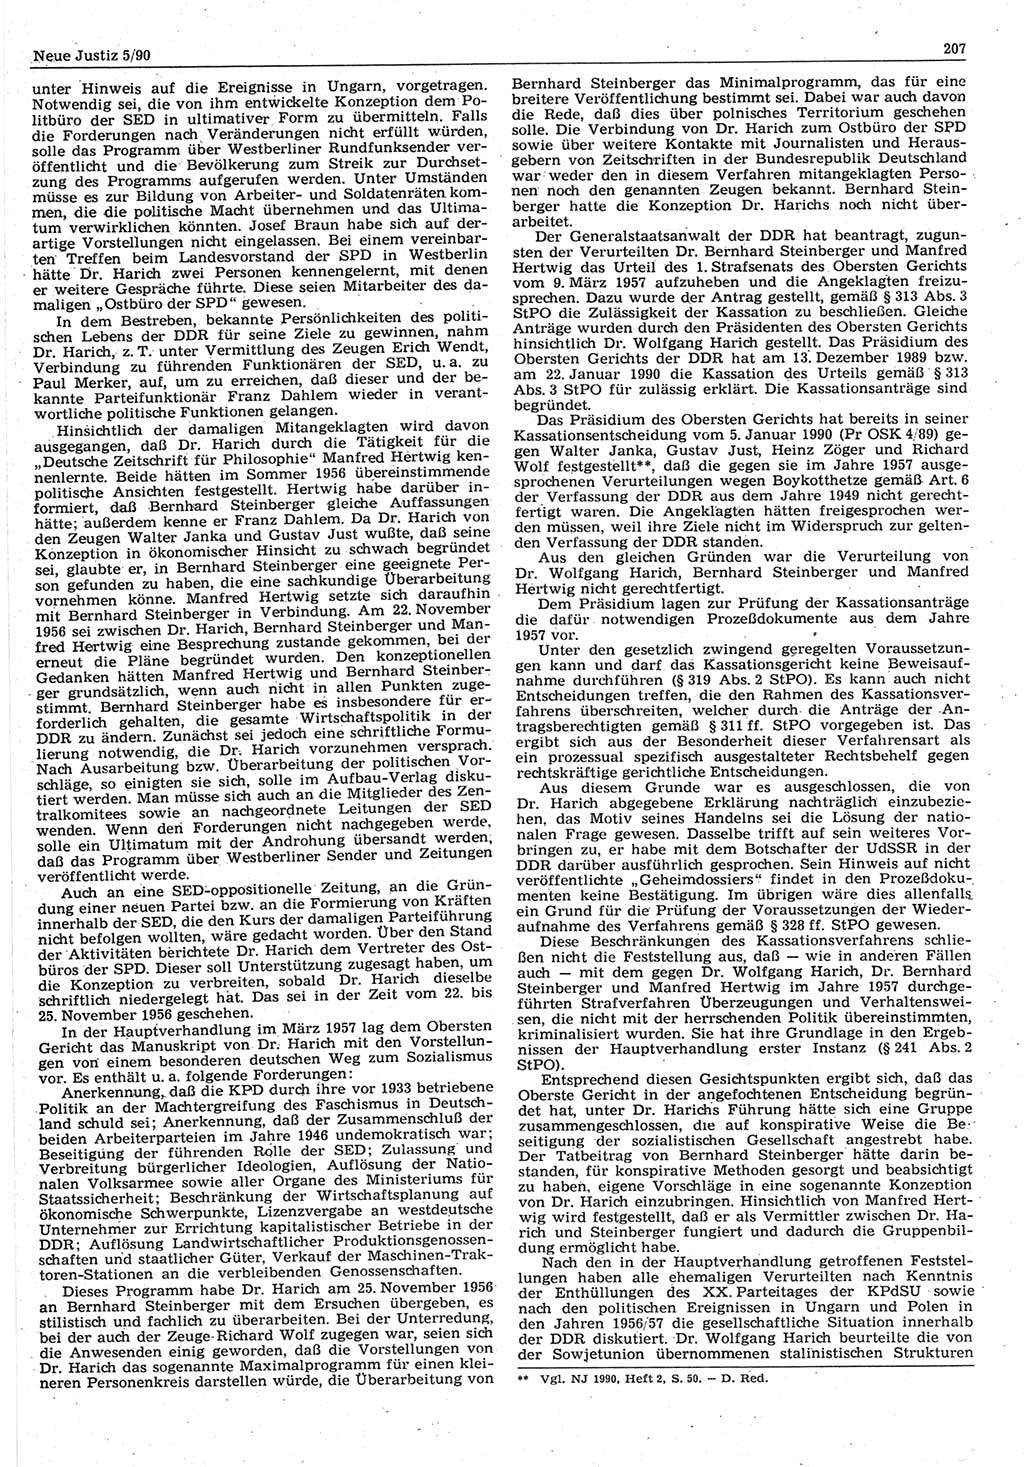 Neue Justiz (NJ), Zeitschrift für Rechtsetzung und Rechtsanwendung [Deutsche Demokratische Republik (DDR)], 44. Jahrgang 1990, Seite 207 (NJ DDR 1990, S. 207)